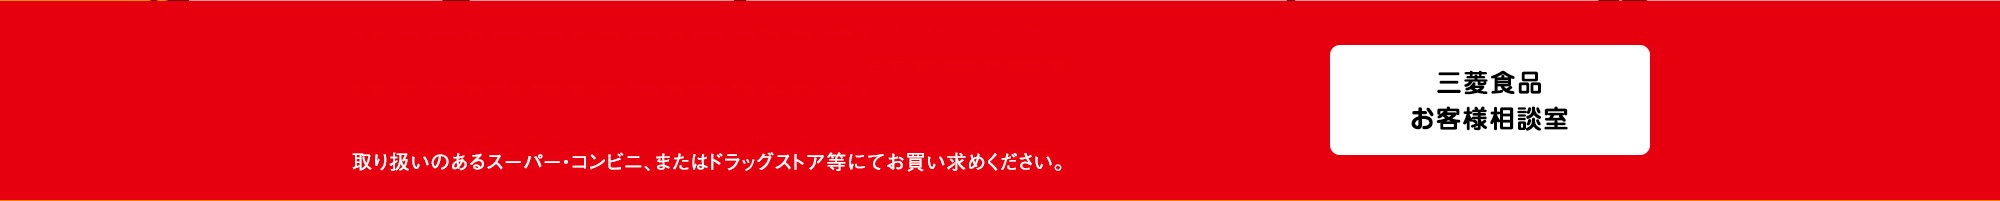 スッパイマン梅サワーは2020年6月30日より沖縄県先行発売、2020年8月25日全国発売